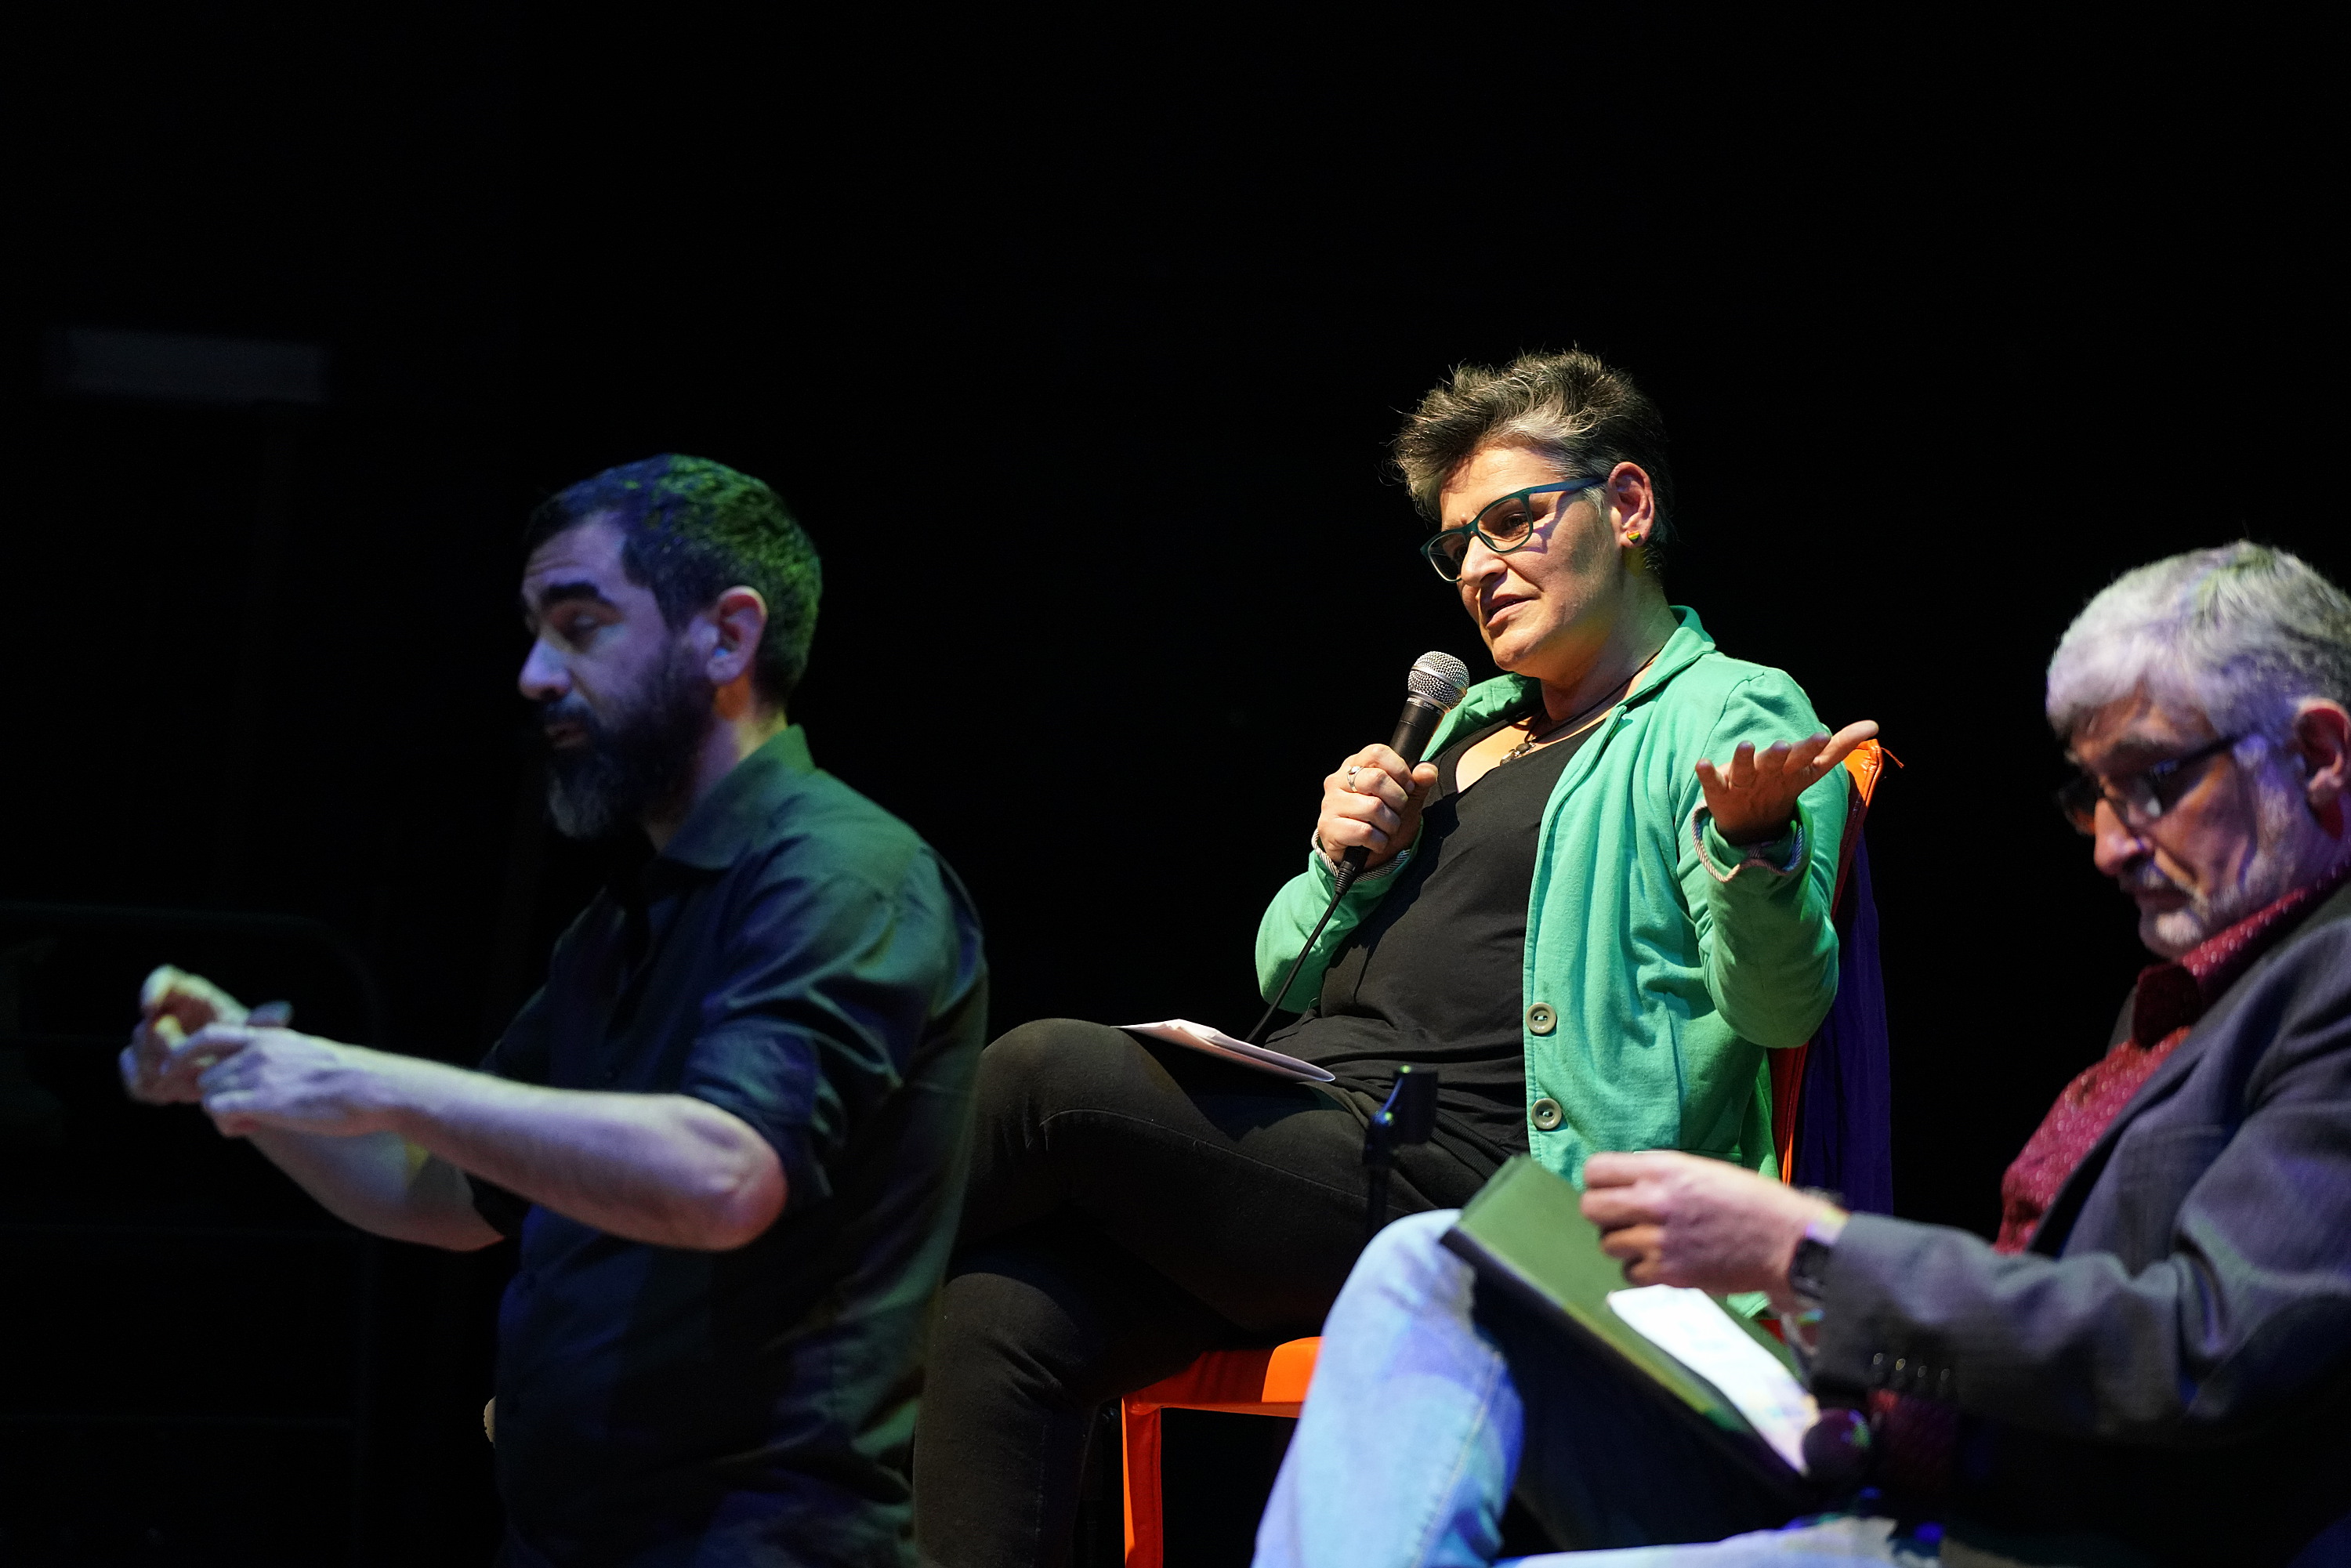 Conversatorio «Día internacional del orgullo LGBT+: el camino de la lucha» en el teatro Solís  